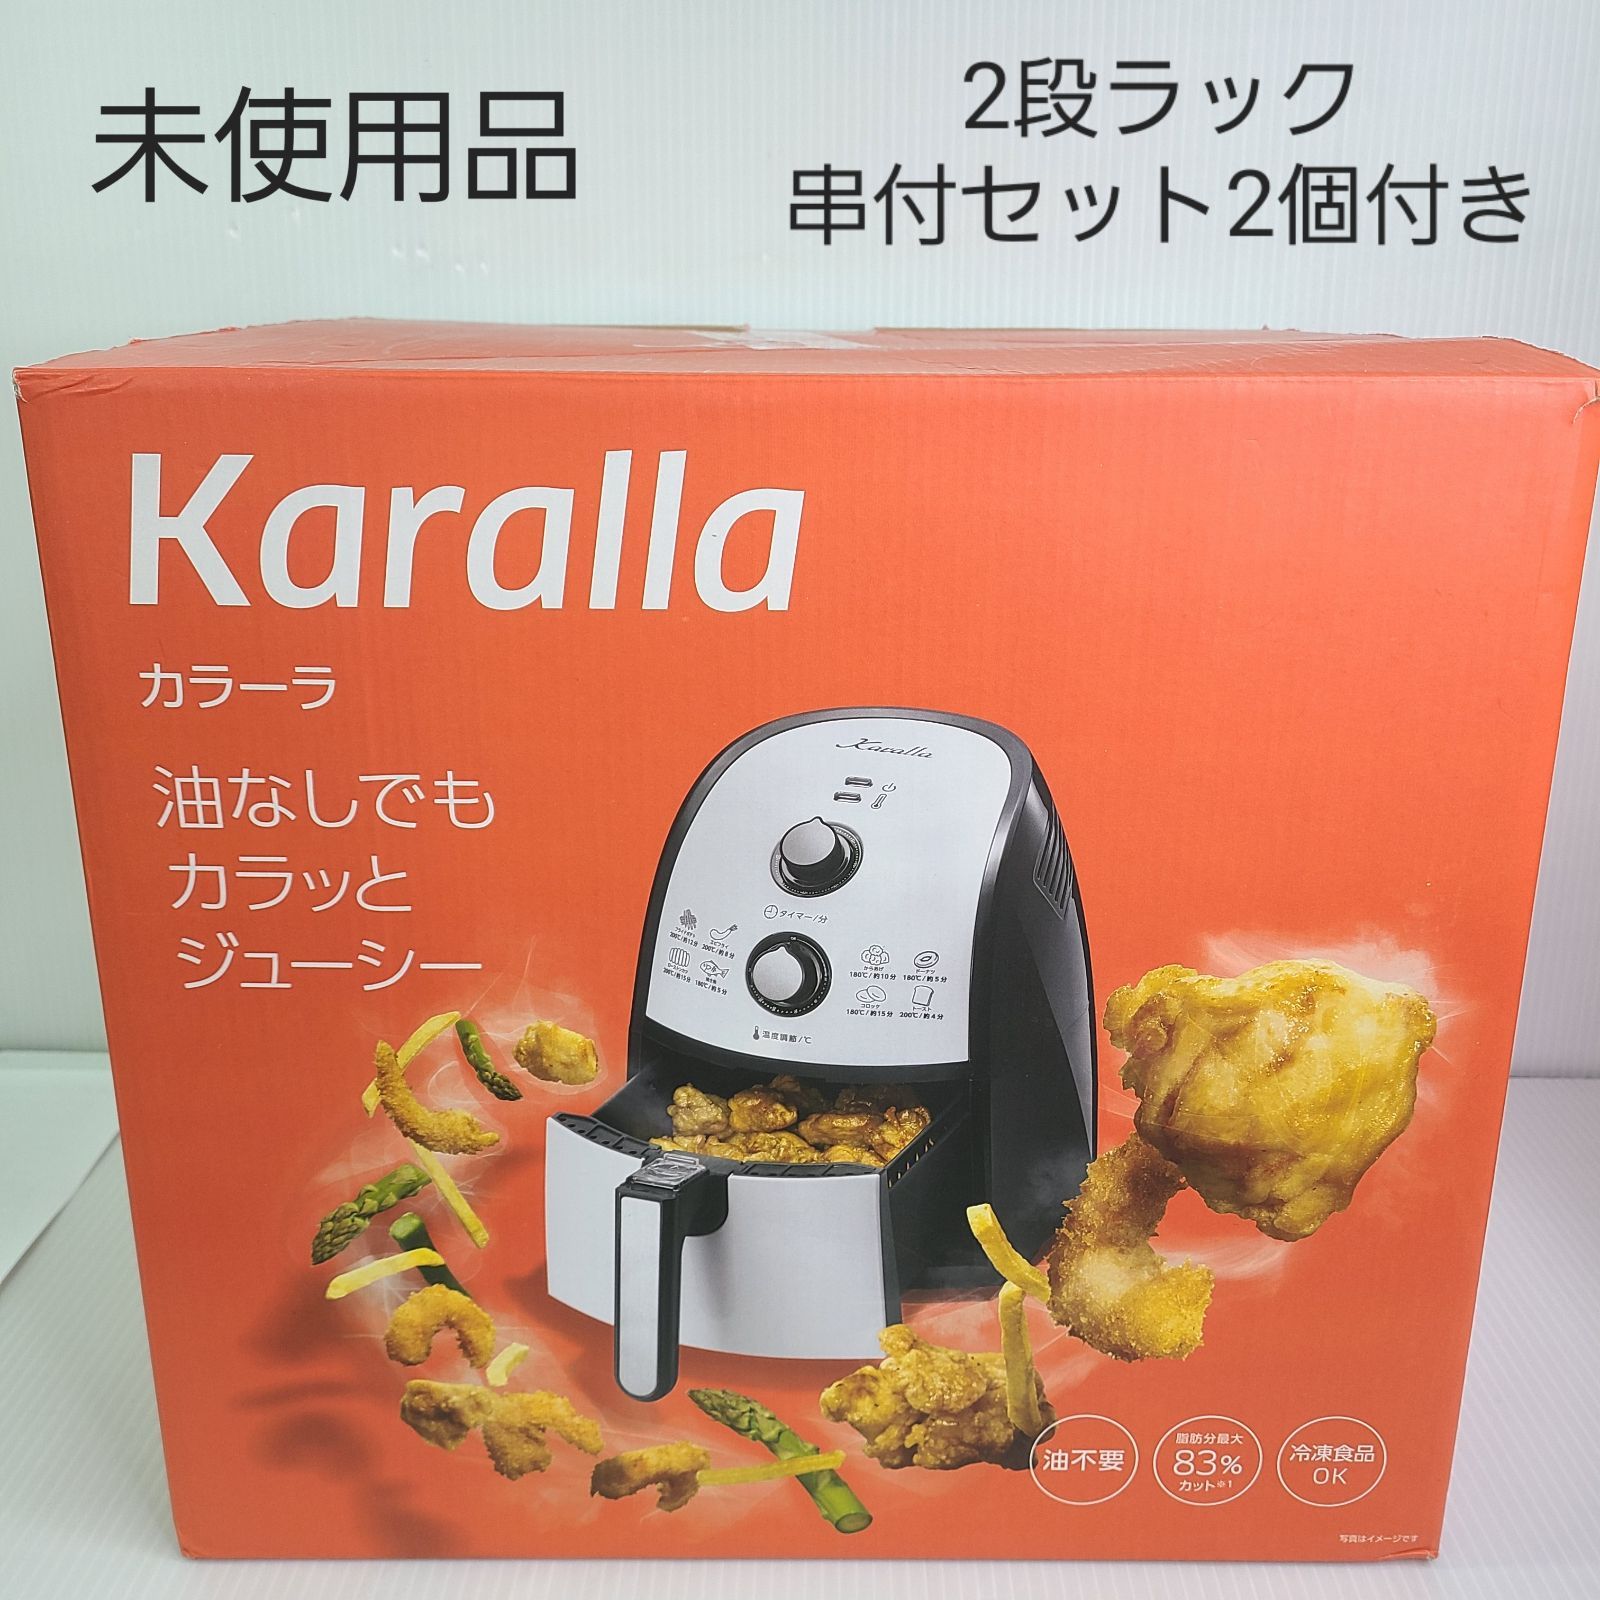 カラーラ - キッチン家電